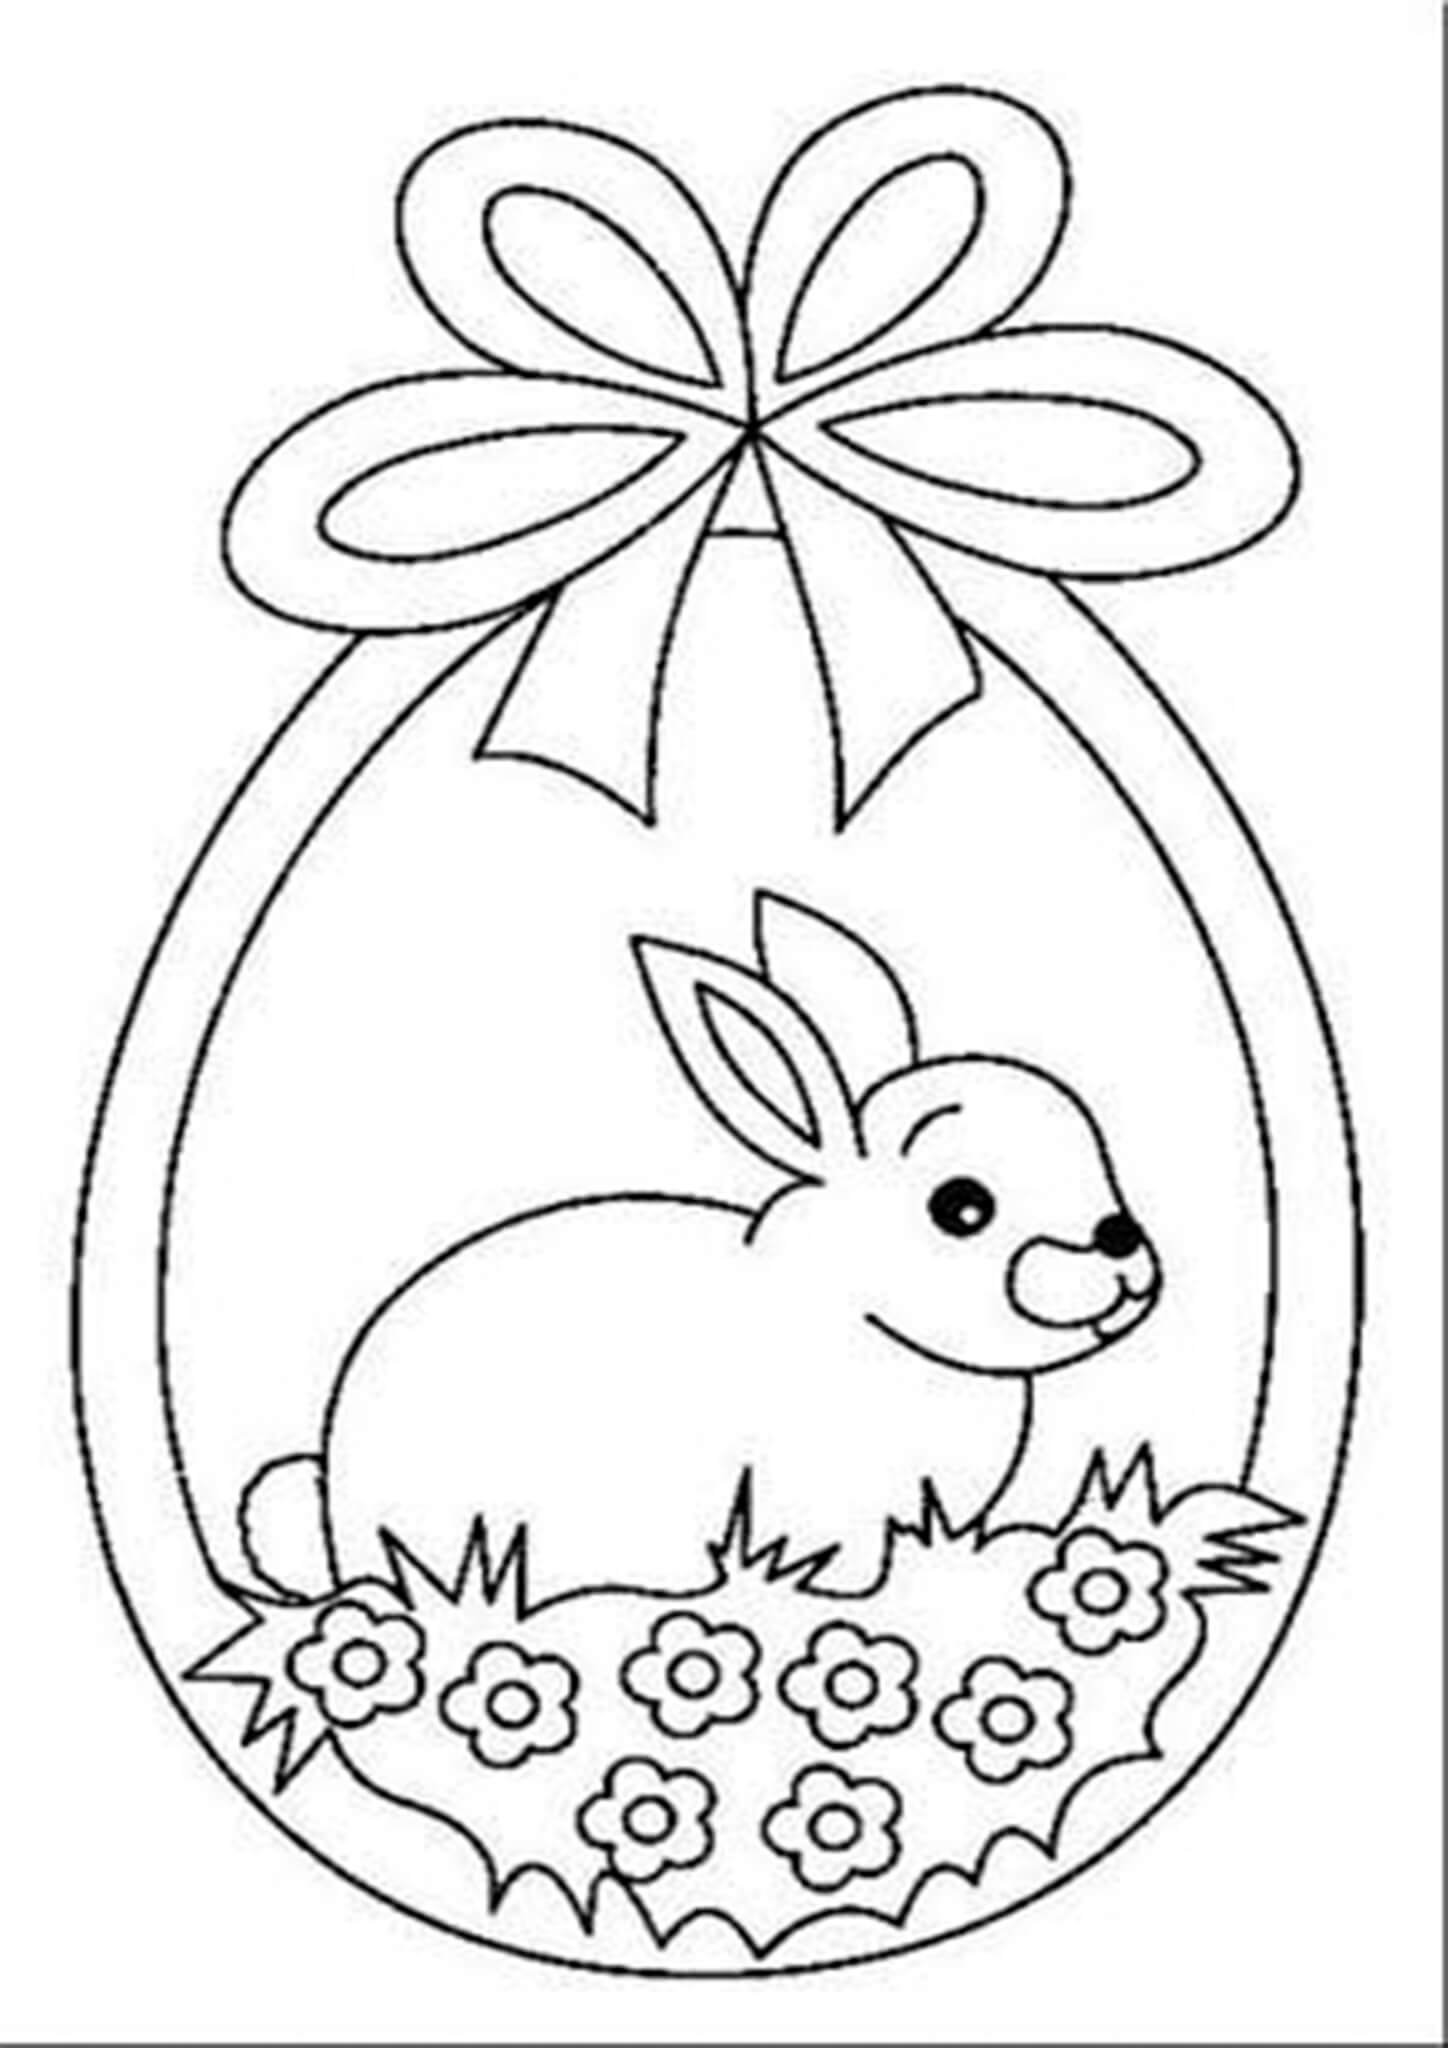 Шаблон пасхального зайца. Раскраска Пасха. Раскраски пасхальные для детей. Раскраска Пасха для детей. Трафареты к Пасхе для детей.